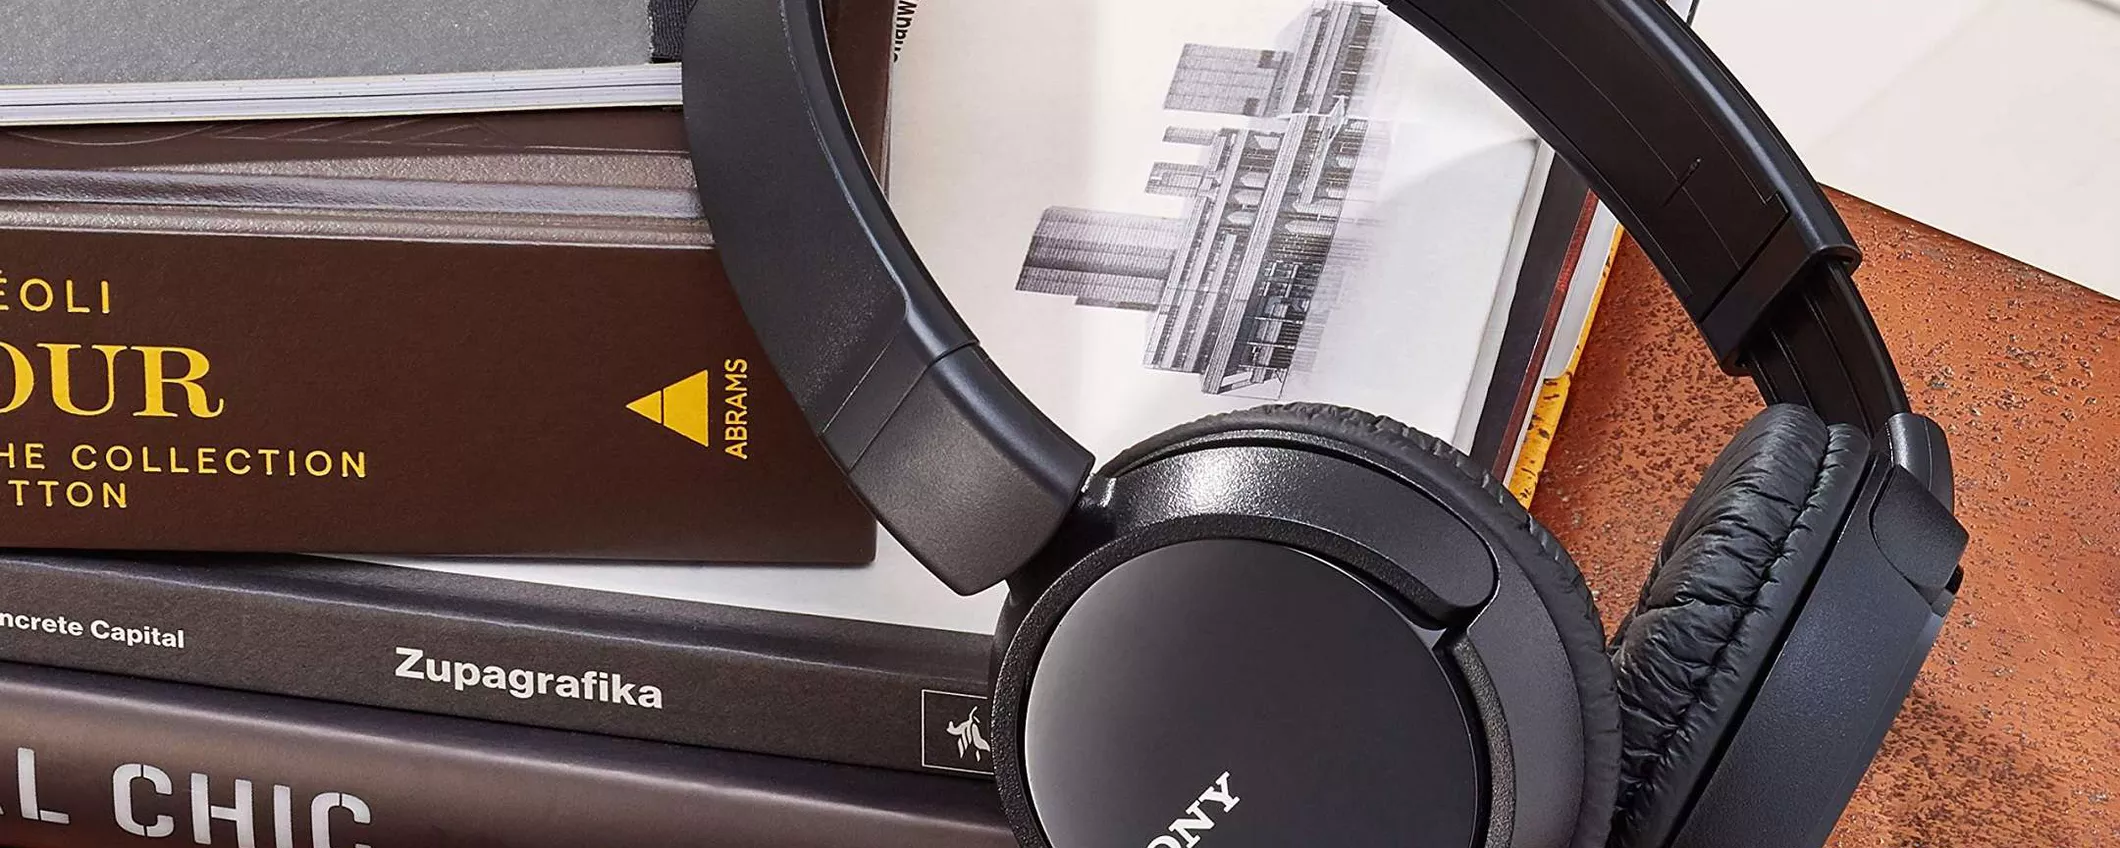 Queste cuffie Sony costano appena 11,99€ su Amazon: è un VERO AFFARE